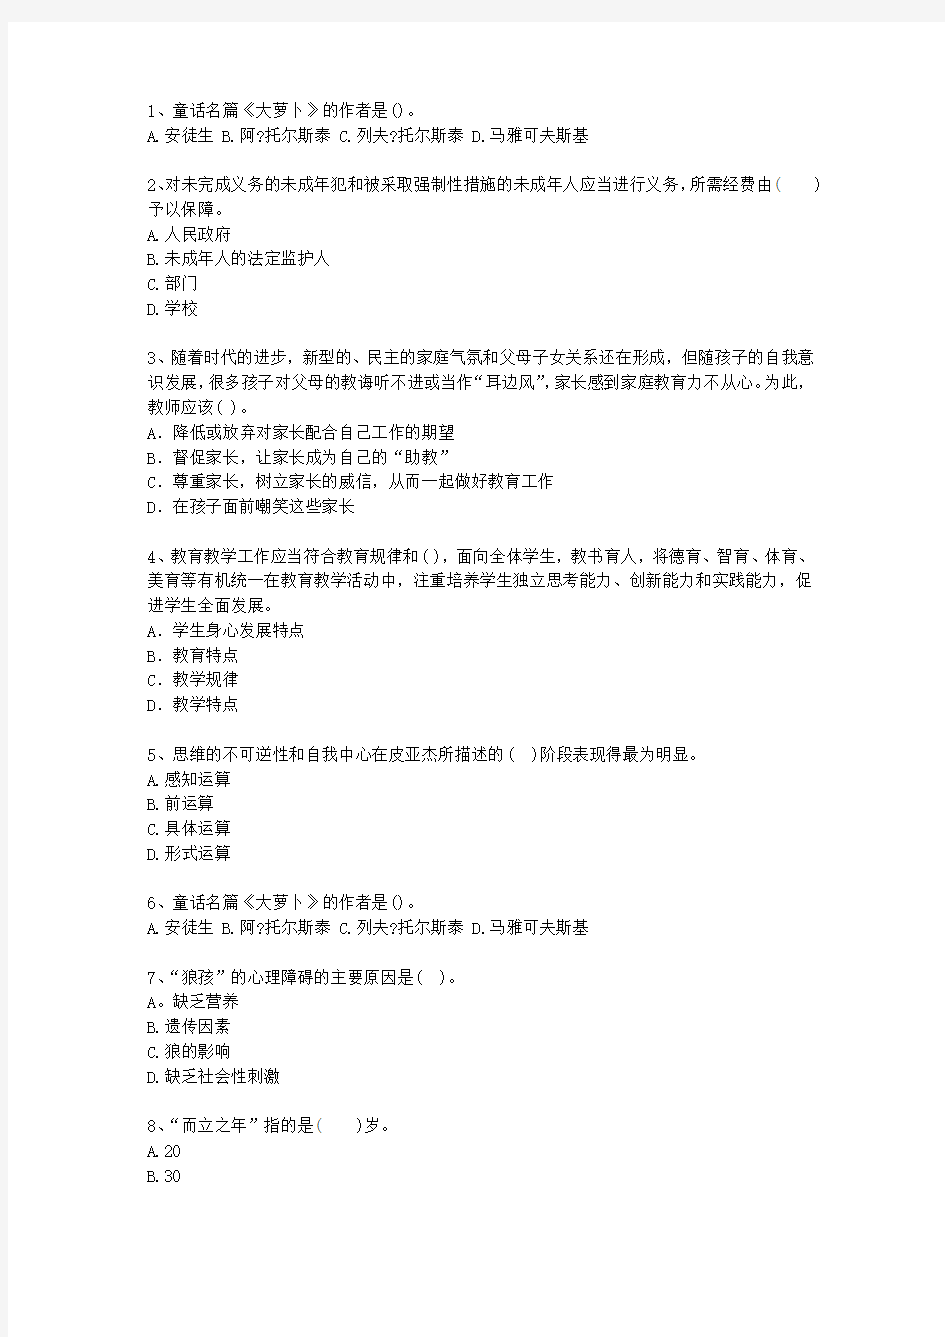 2013江苏省教师资格证考试《小学综合素质》考试技巧重点